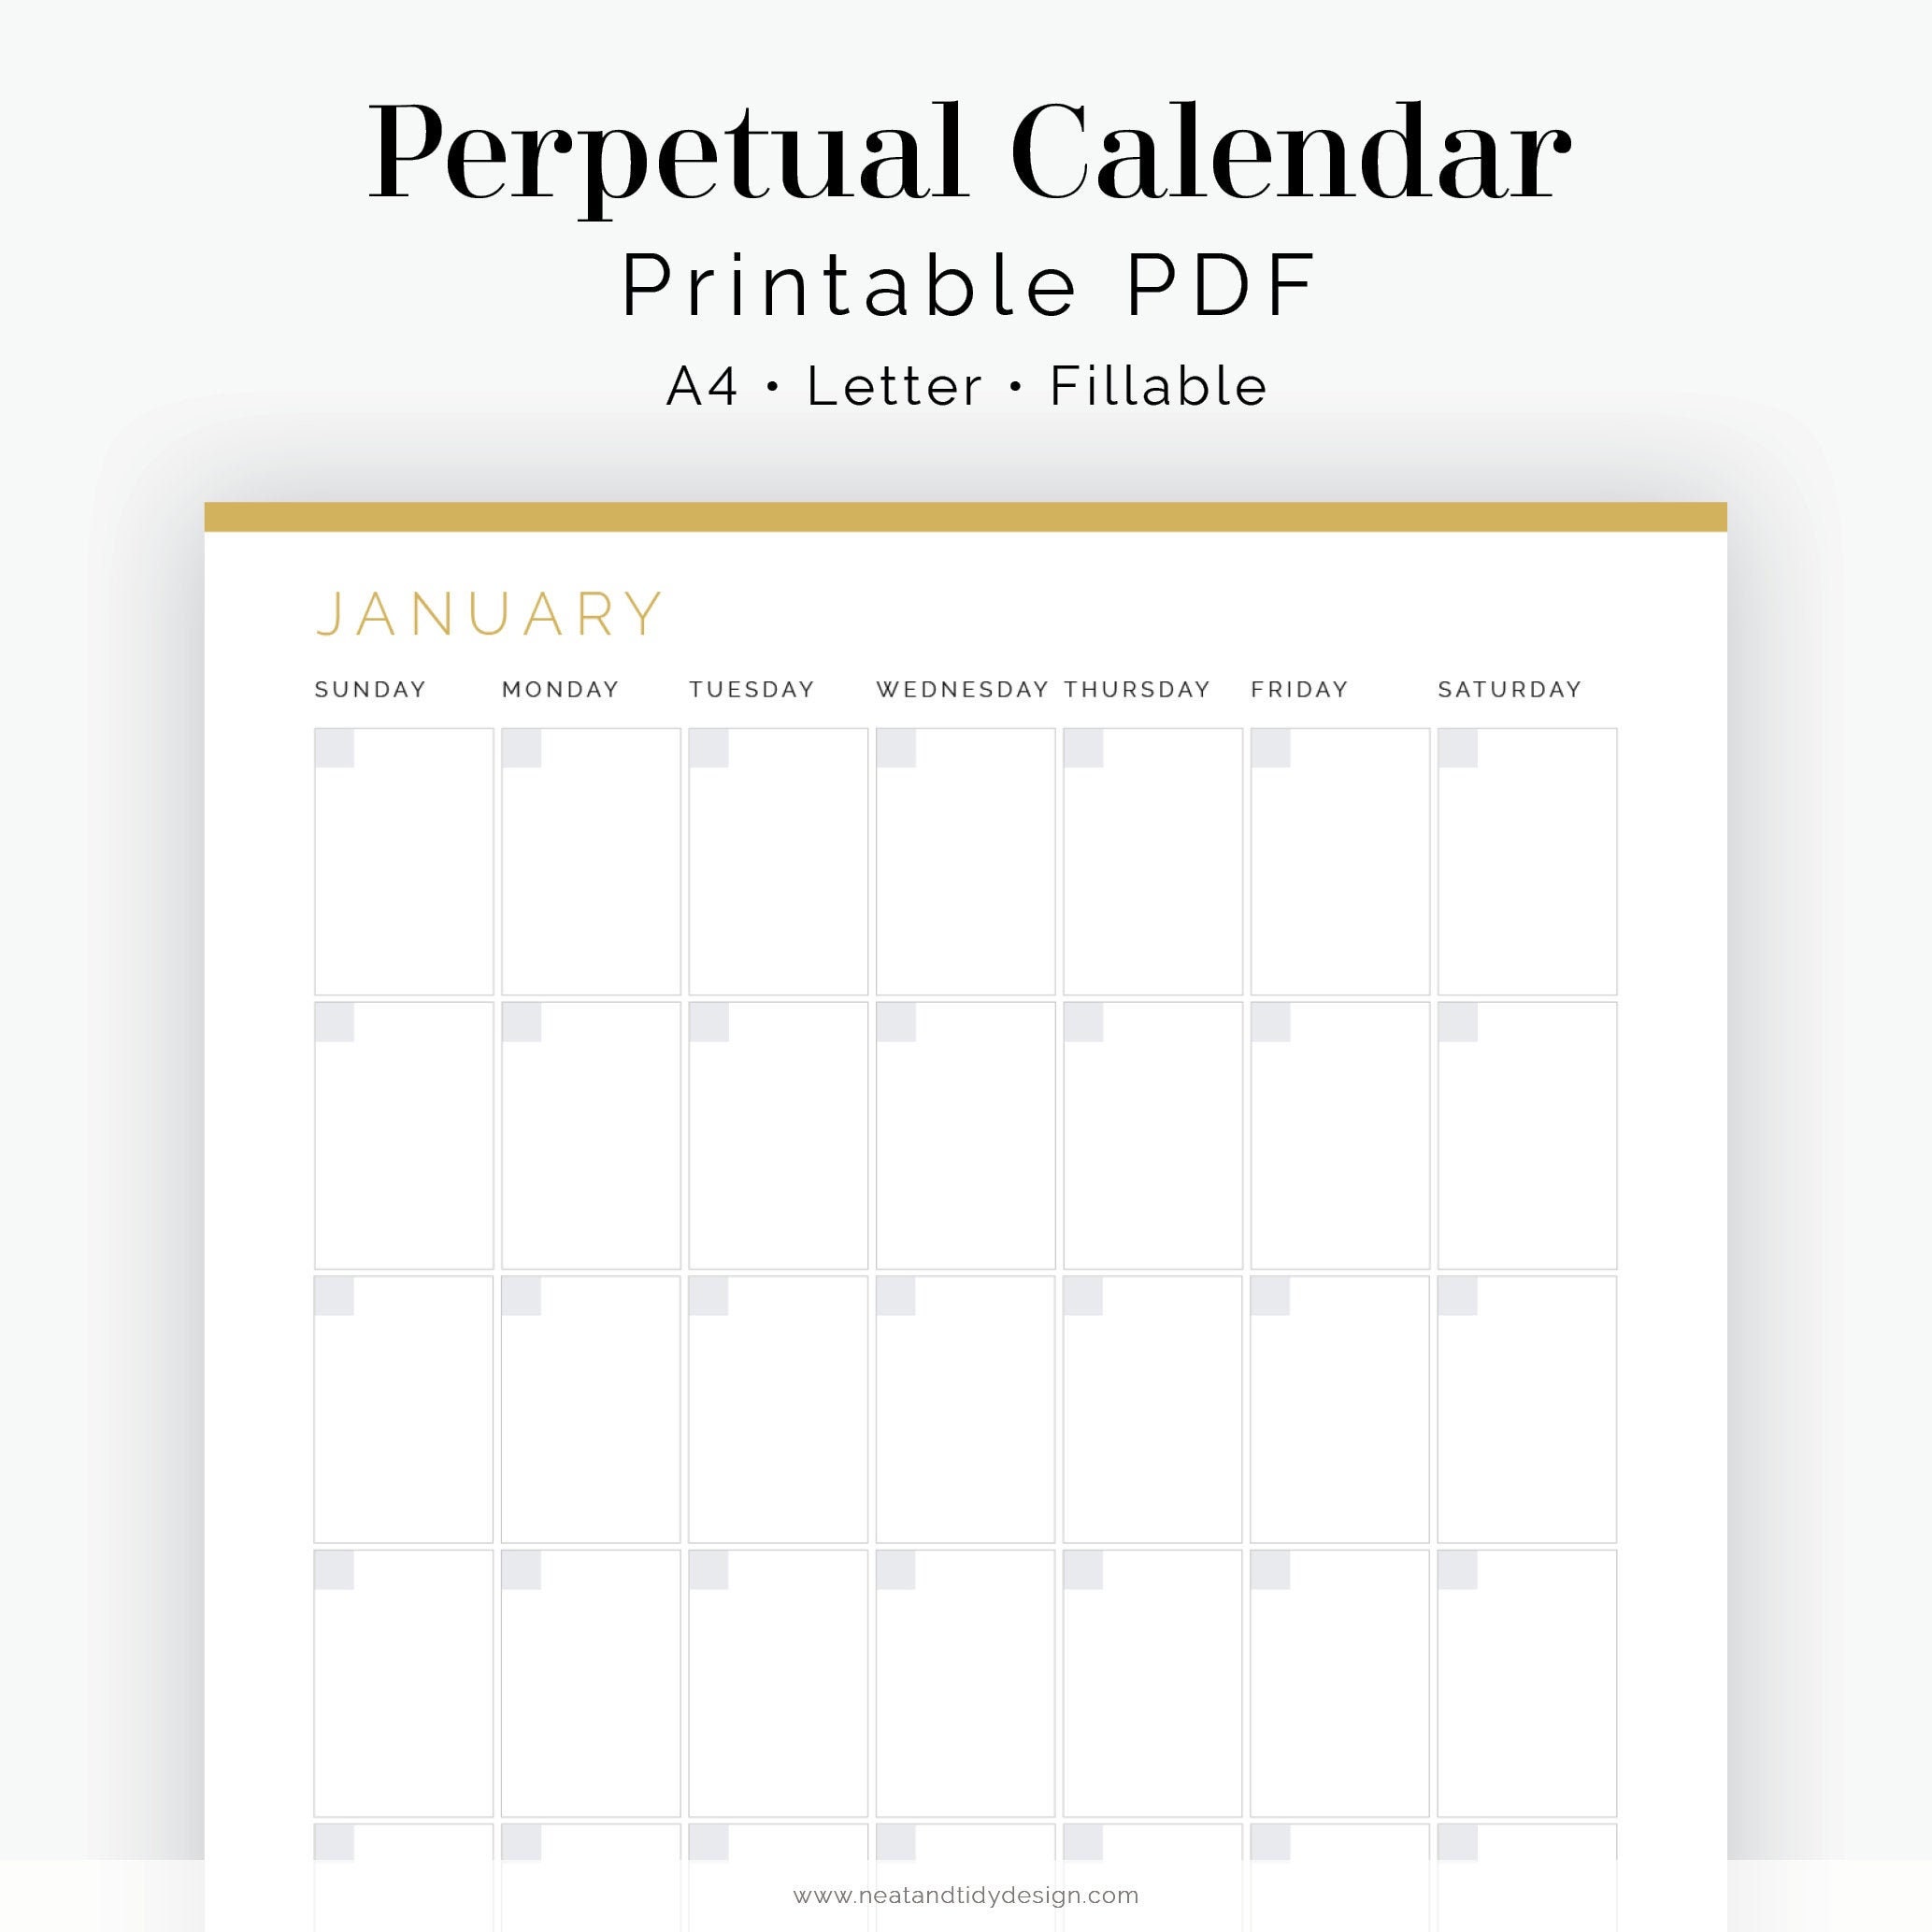 Calendrier mensuel perpétuel minimaliste à imprimer